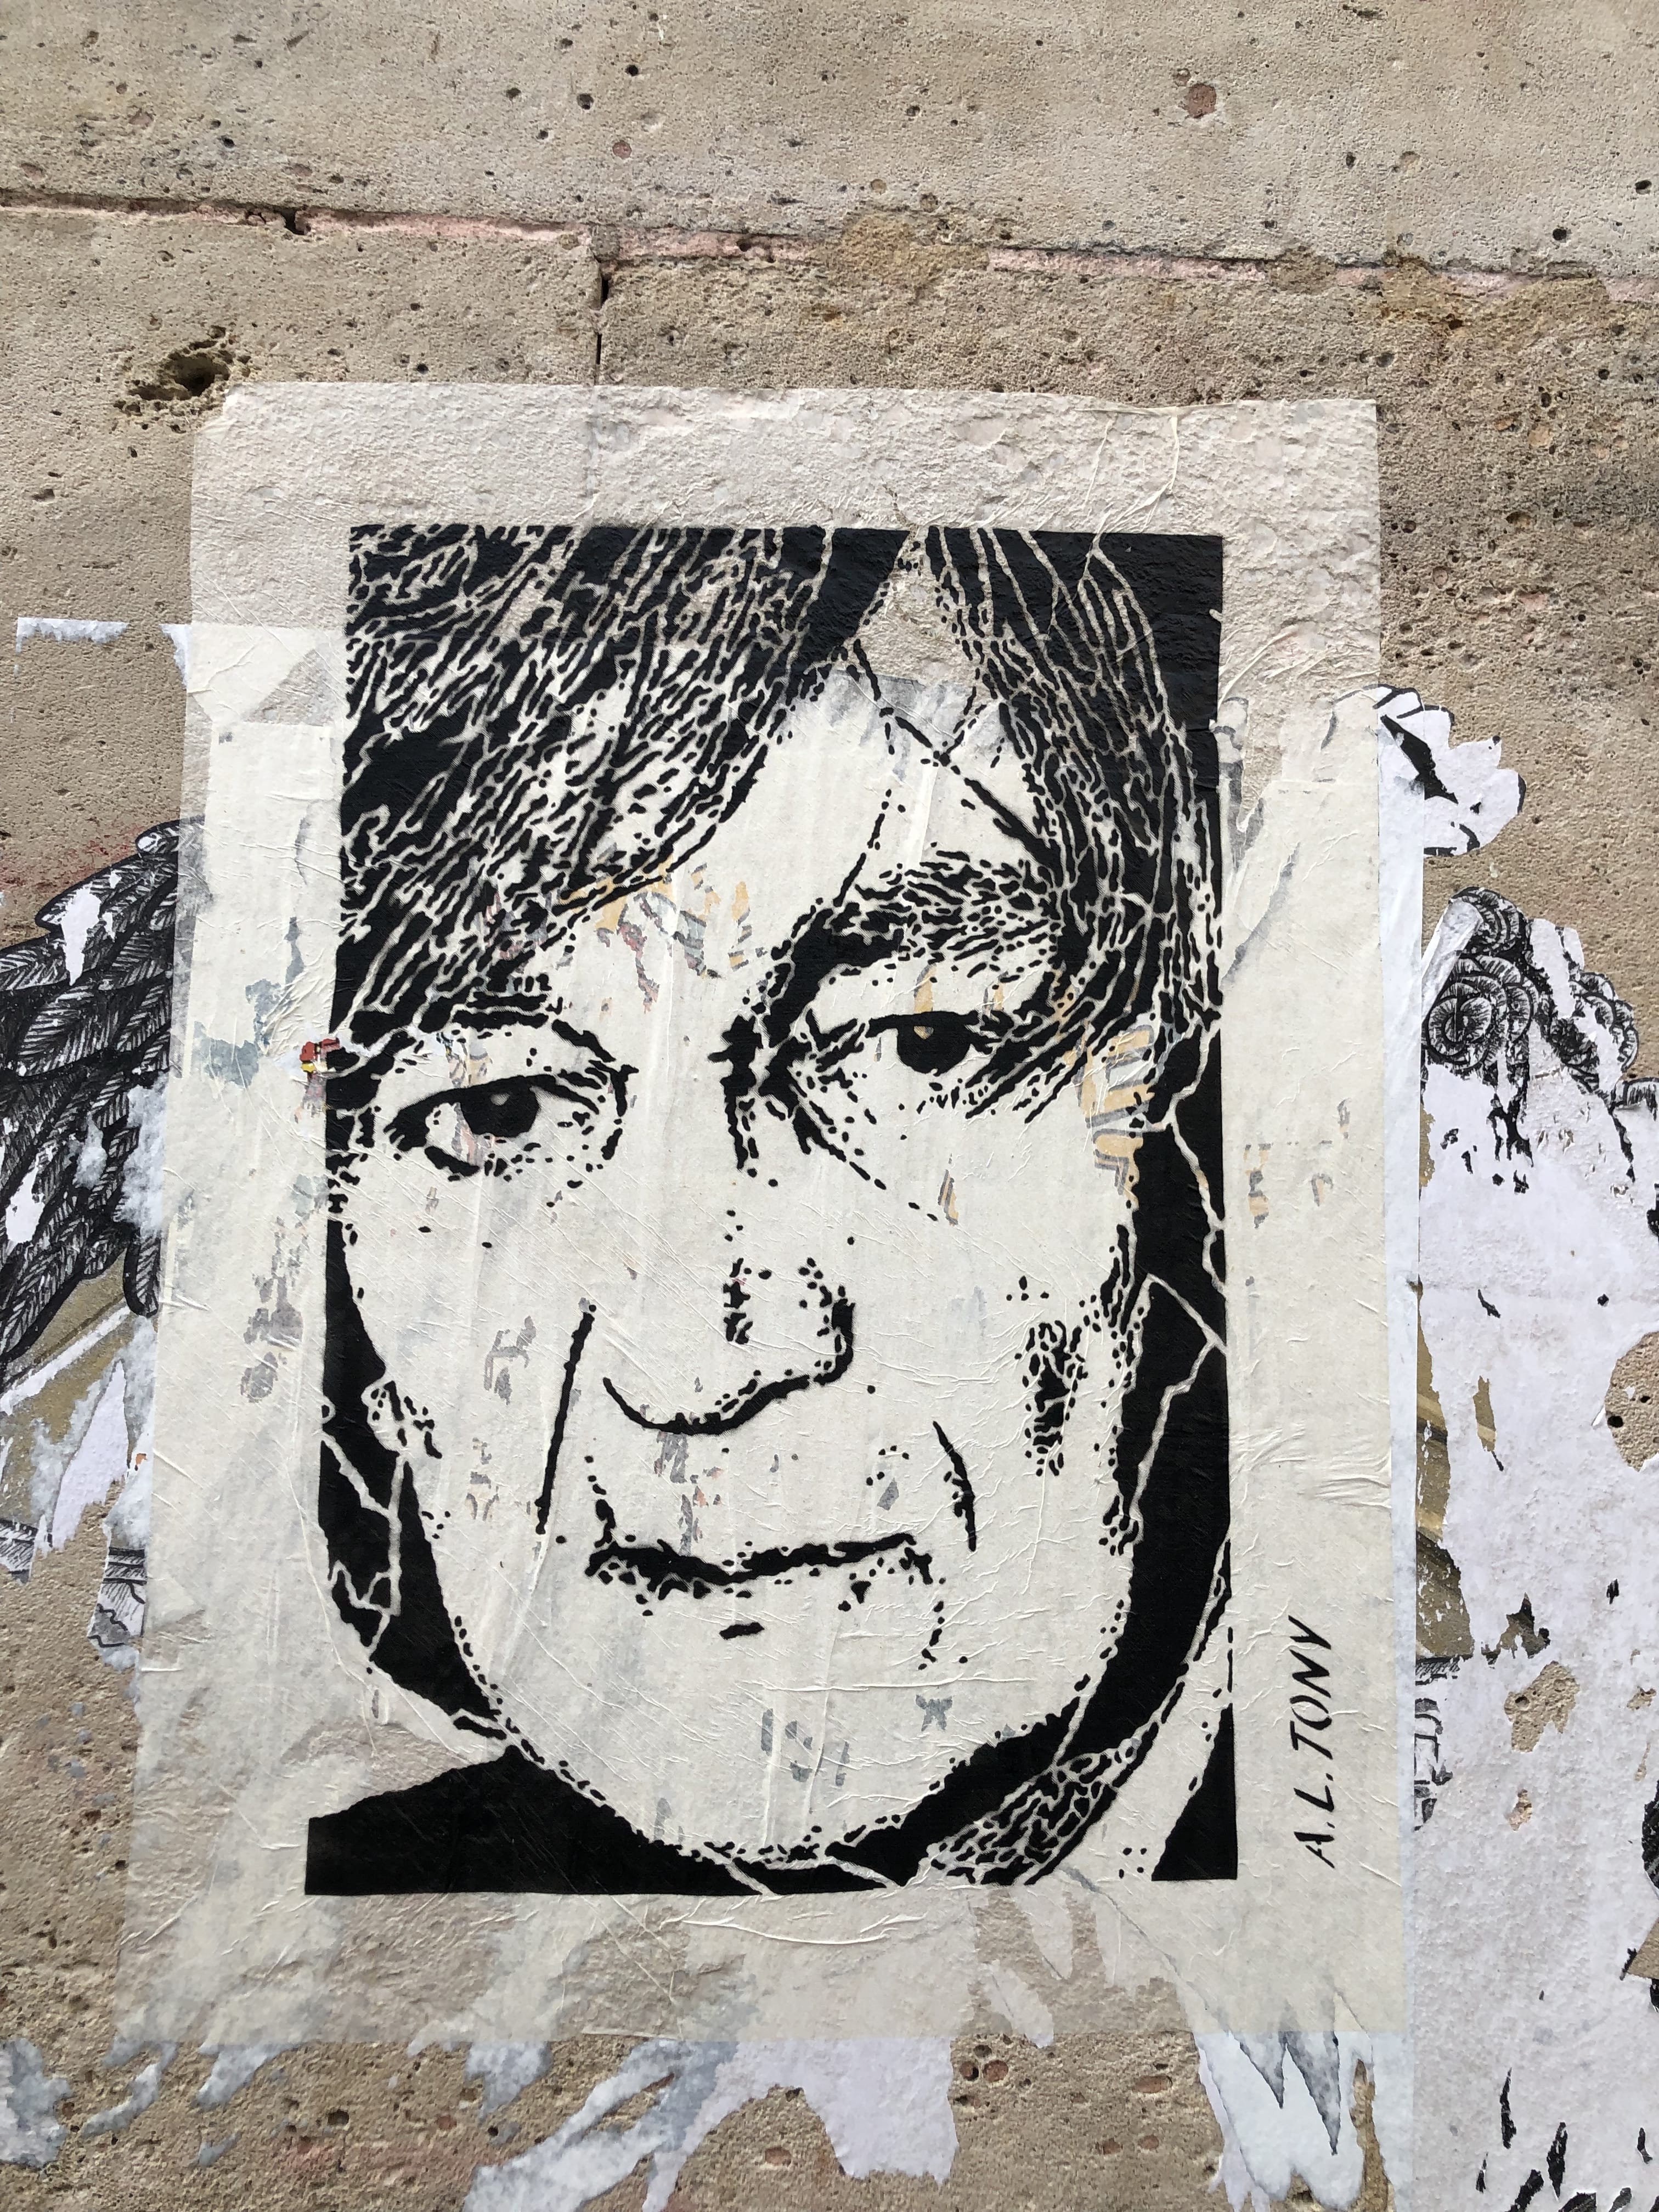 Graffiti 5423 Al Tony in Paris France